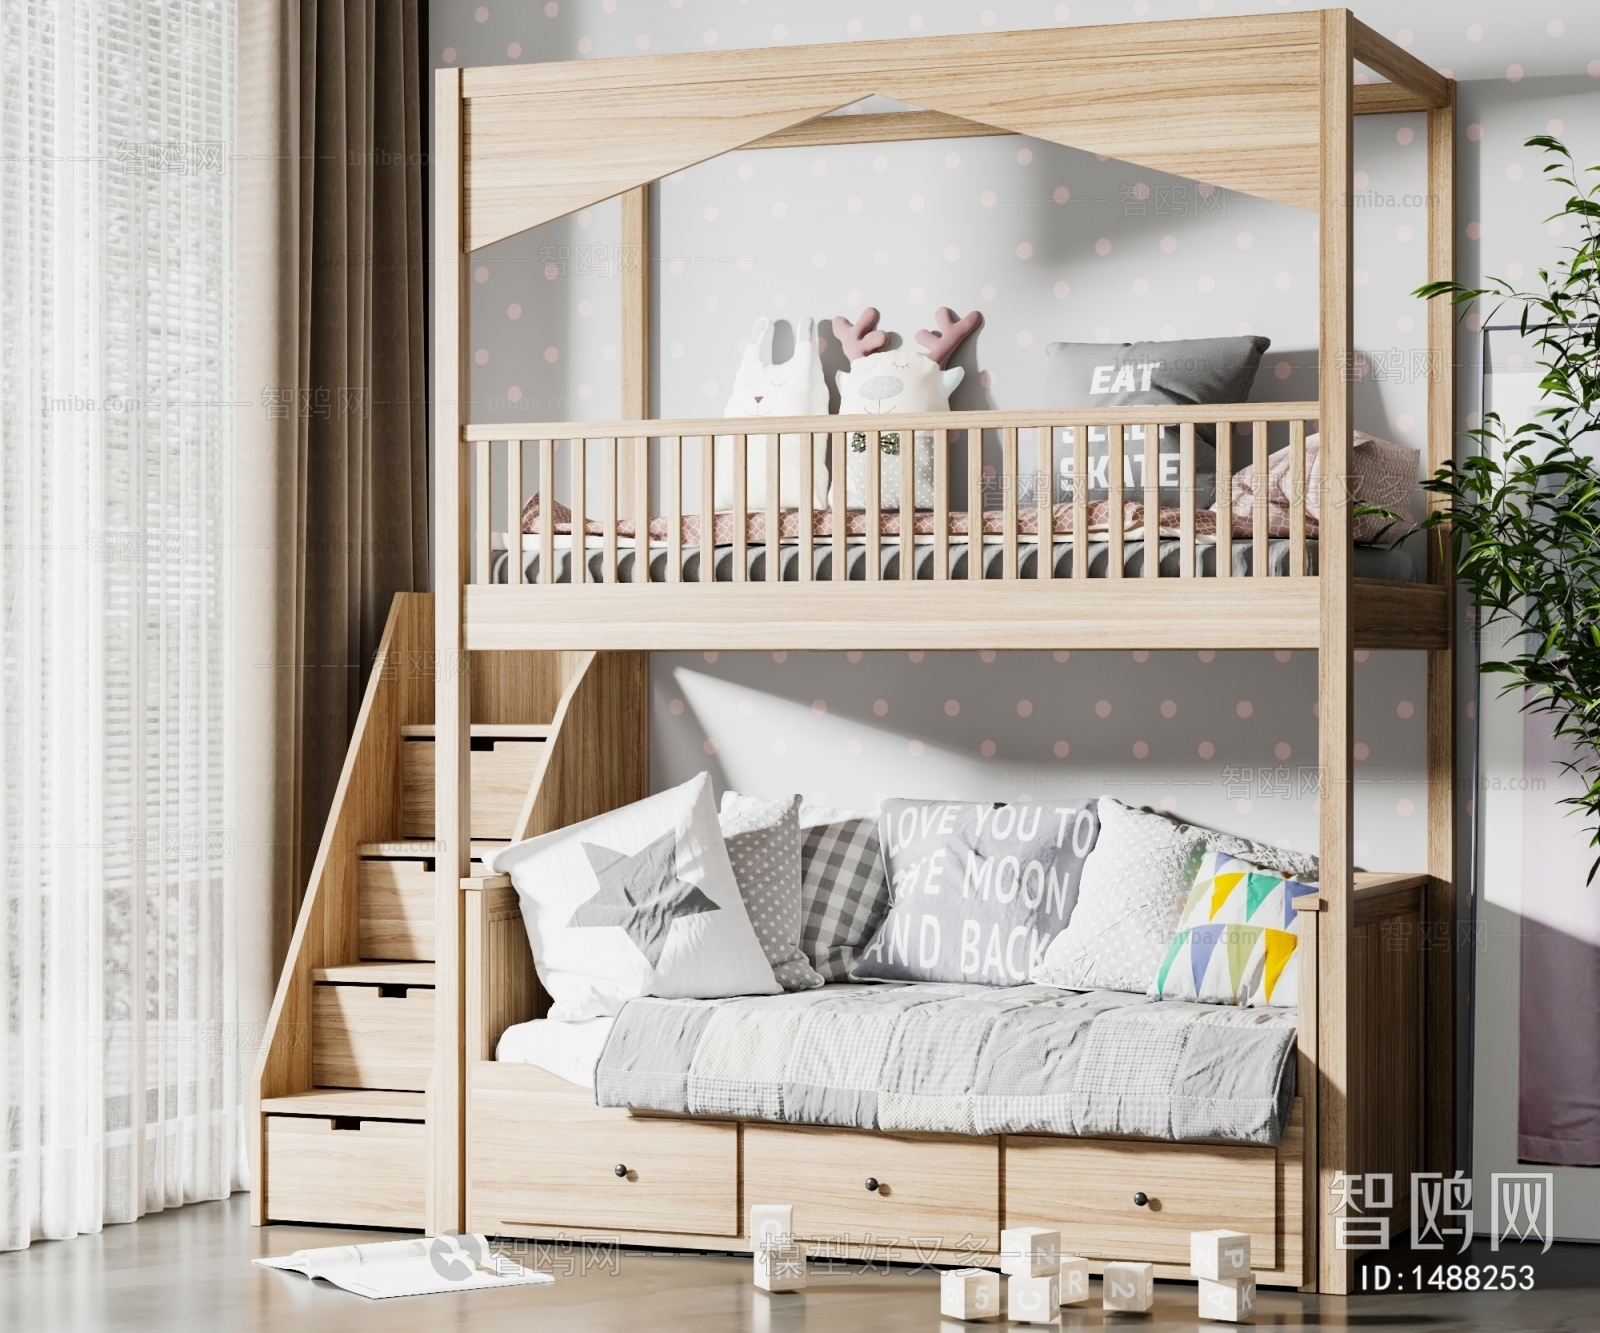 男生卧室双层儿童床装修效果图片大全_别墅设计图